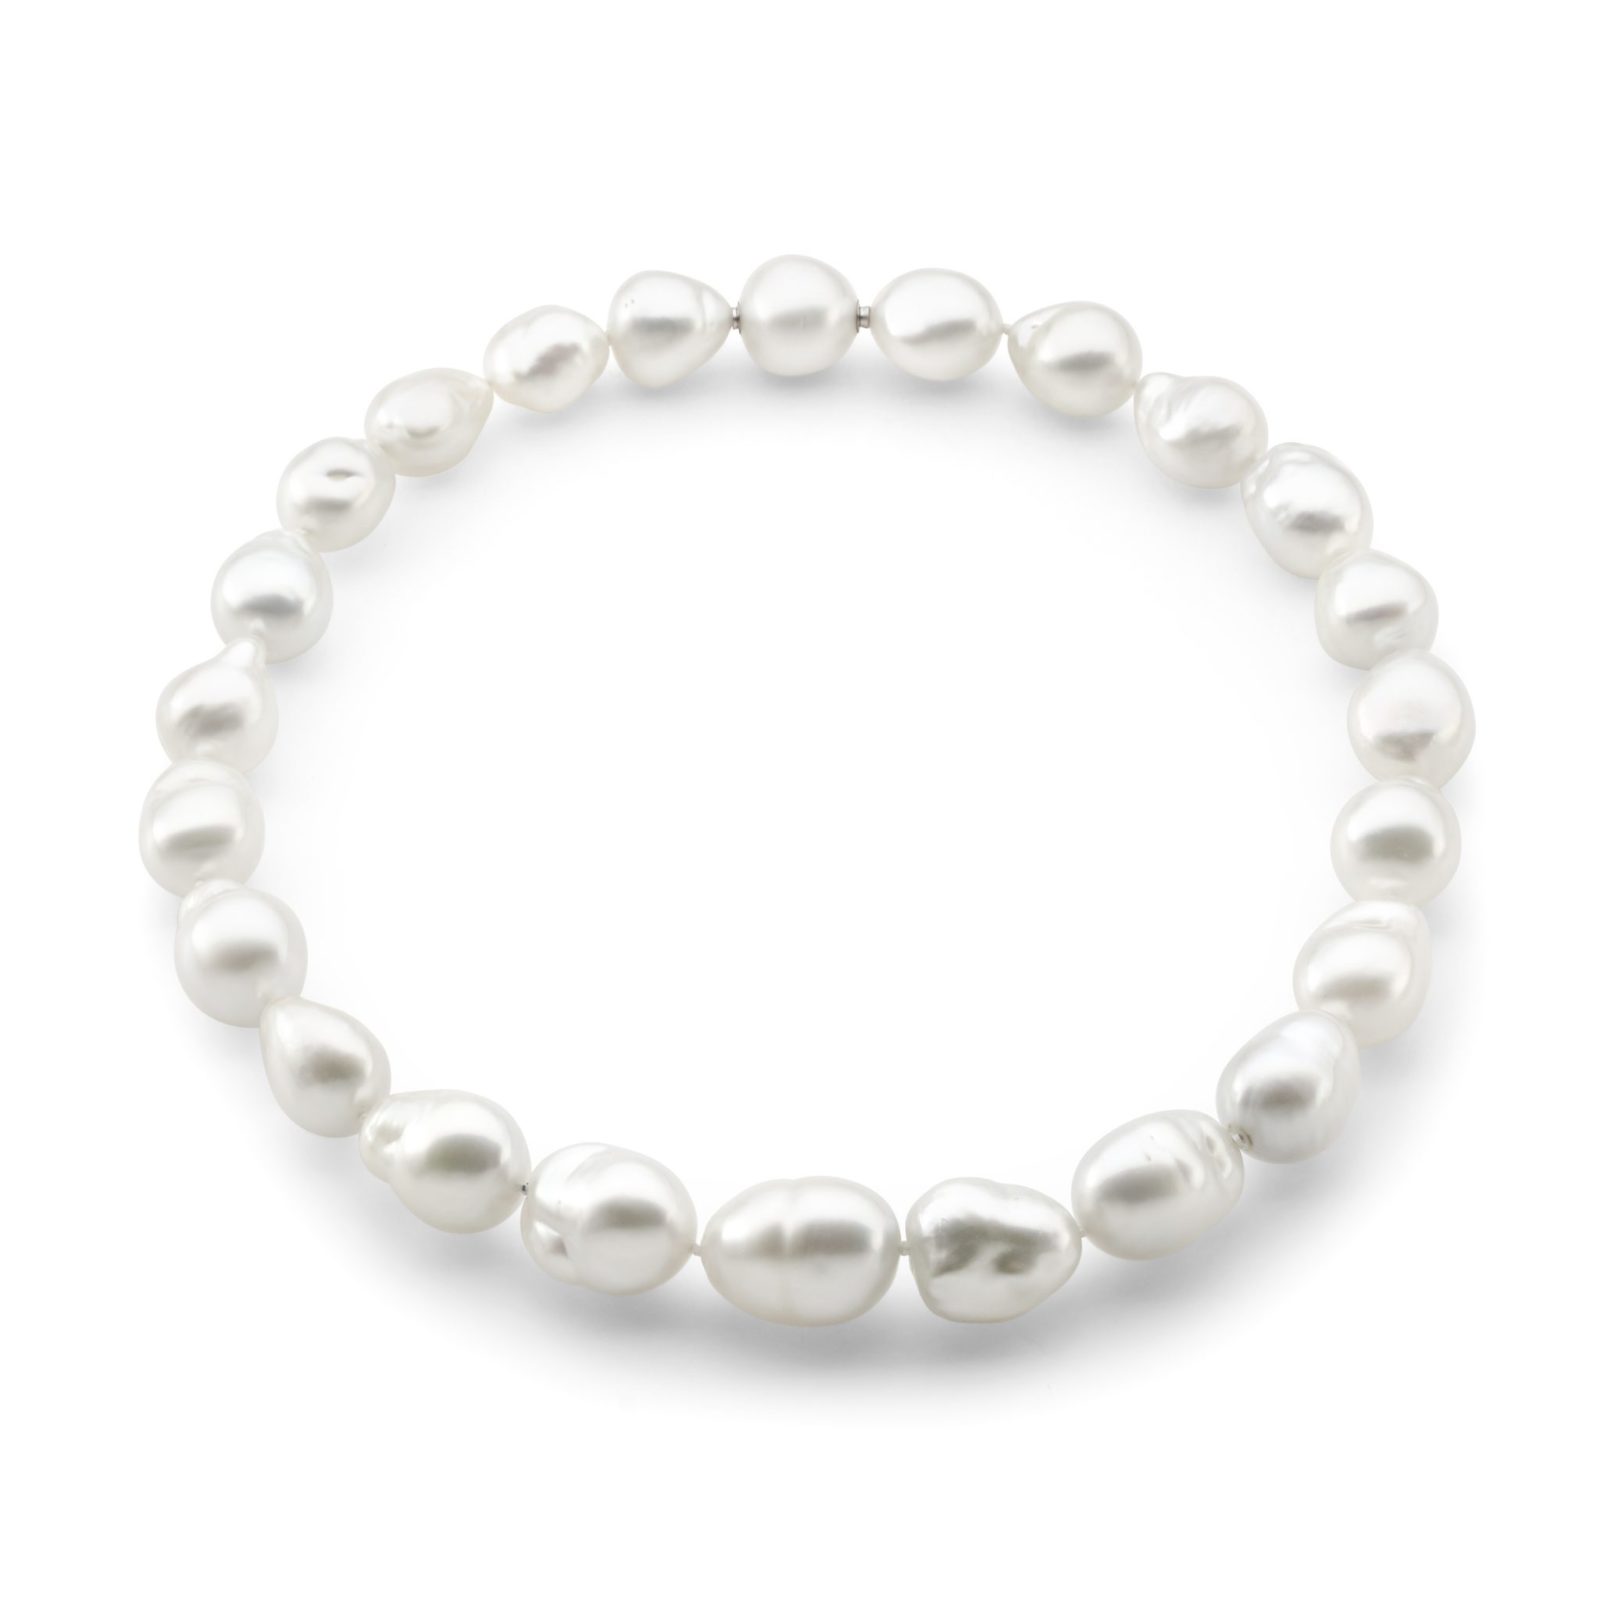 Aggregate 79+ baroque pearl necklace australia latest - POPPY